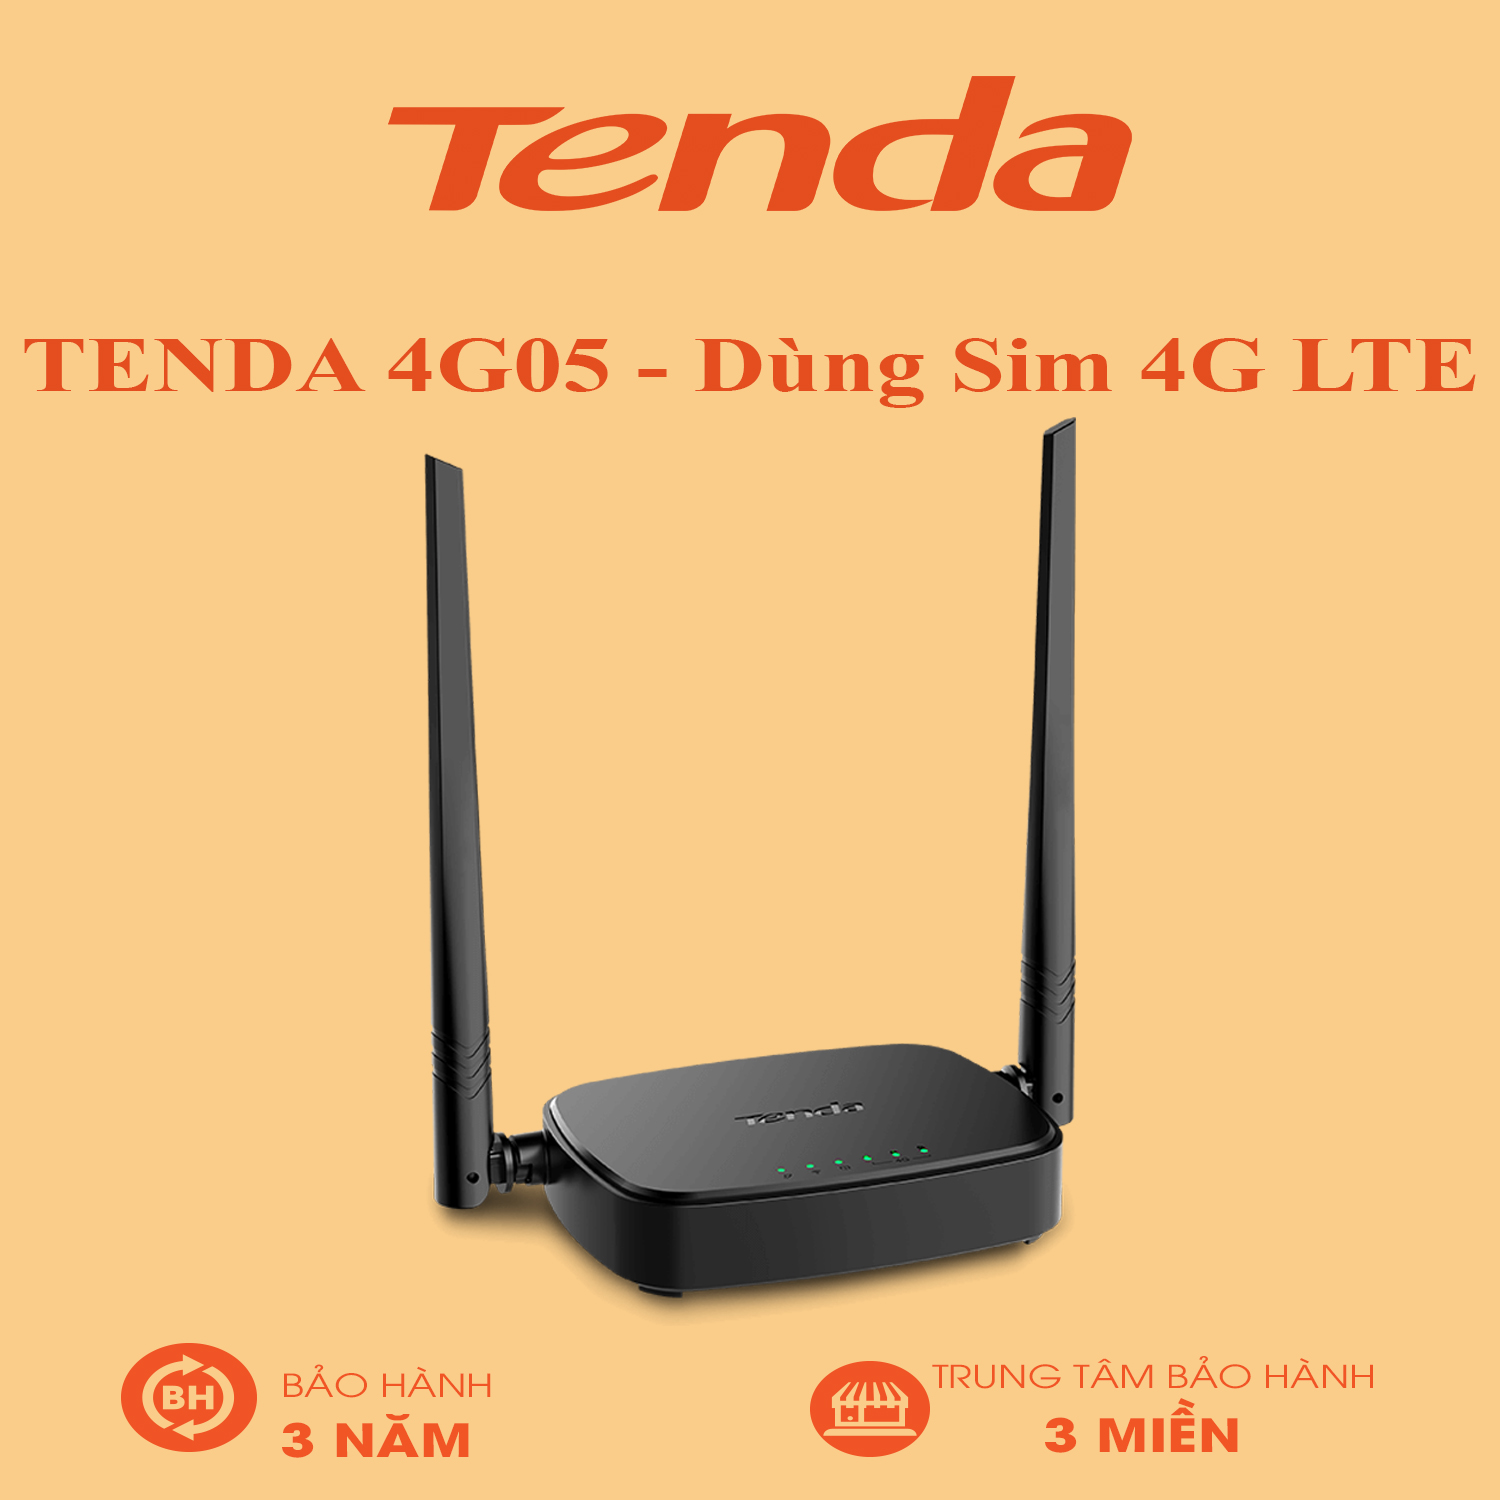 TENDA 4G05 - Dùng Sim 4G LTE - Bảo Hành 36 Tháng